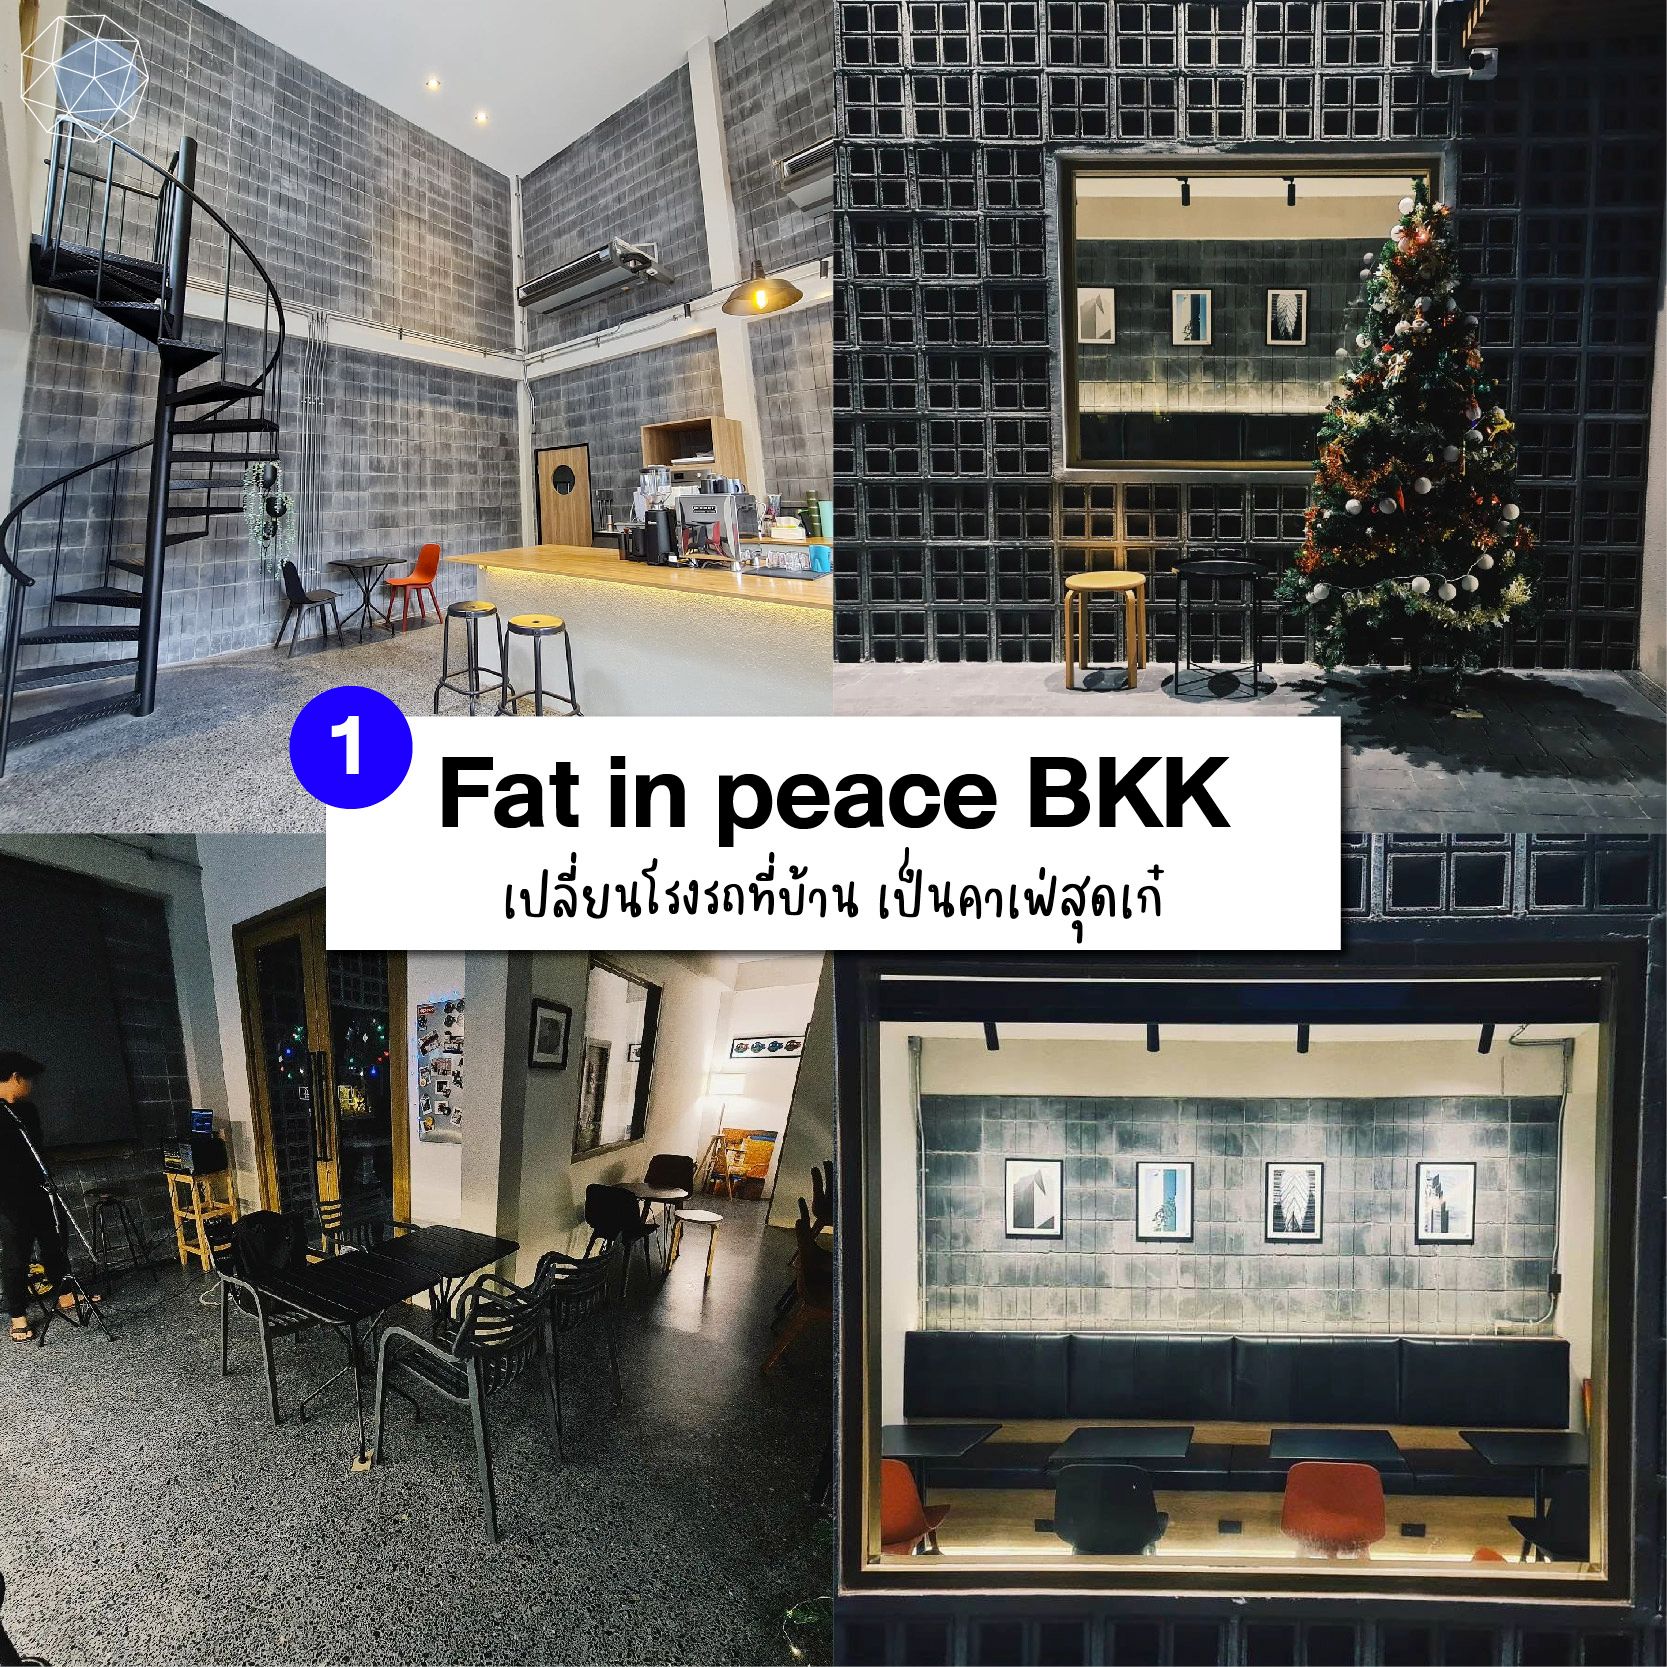 คาเฟ่บางนา Fat in peace BKK